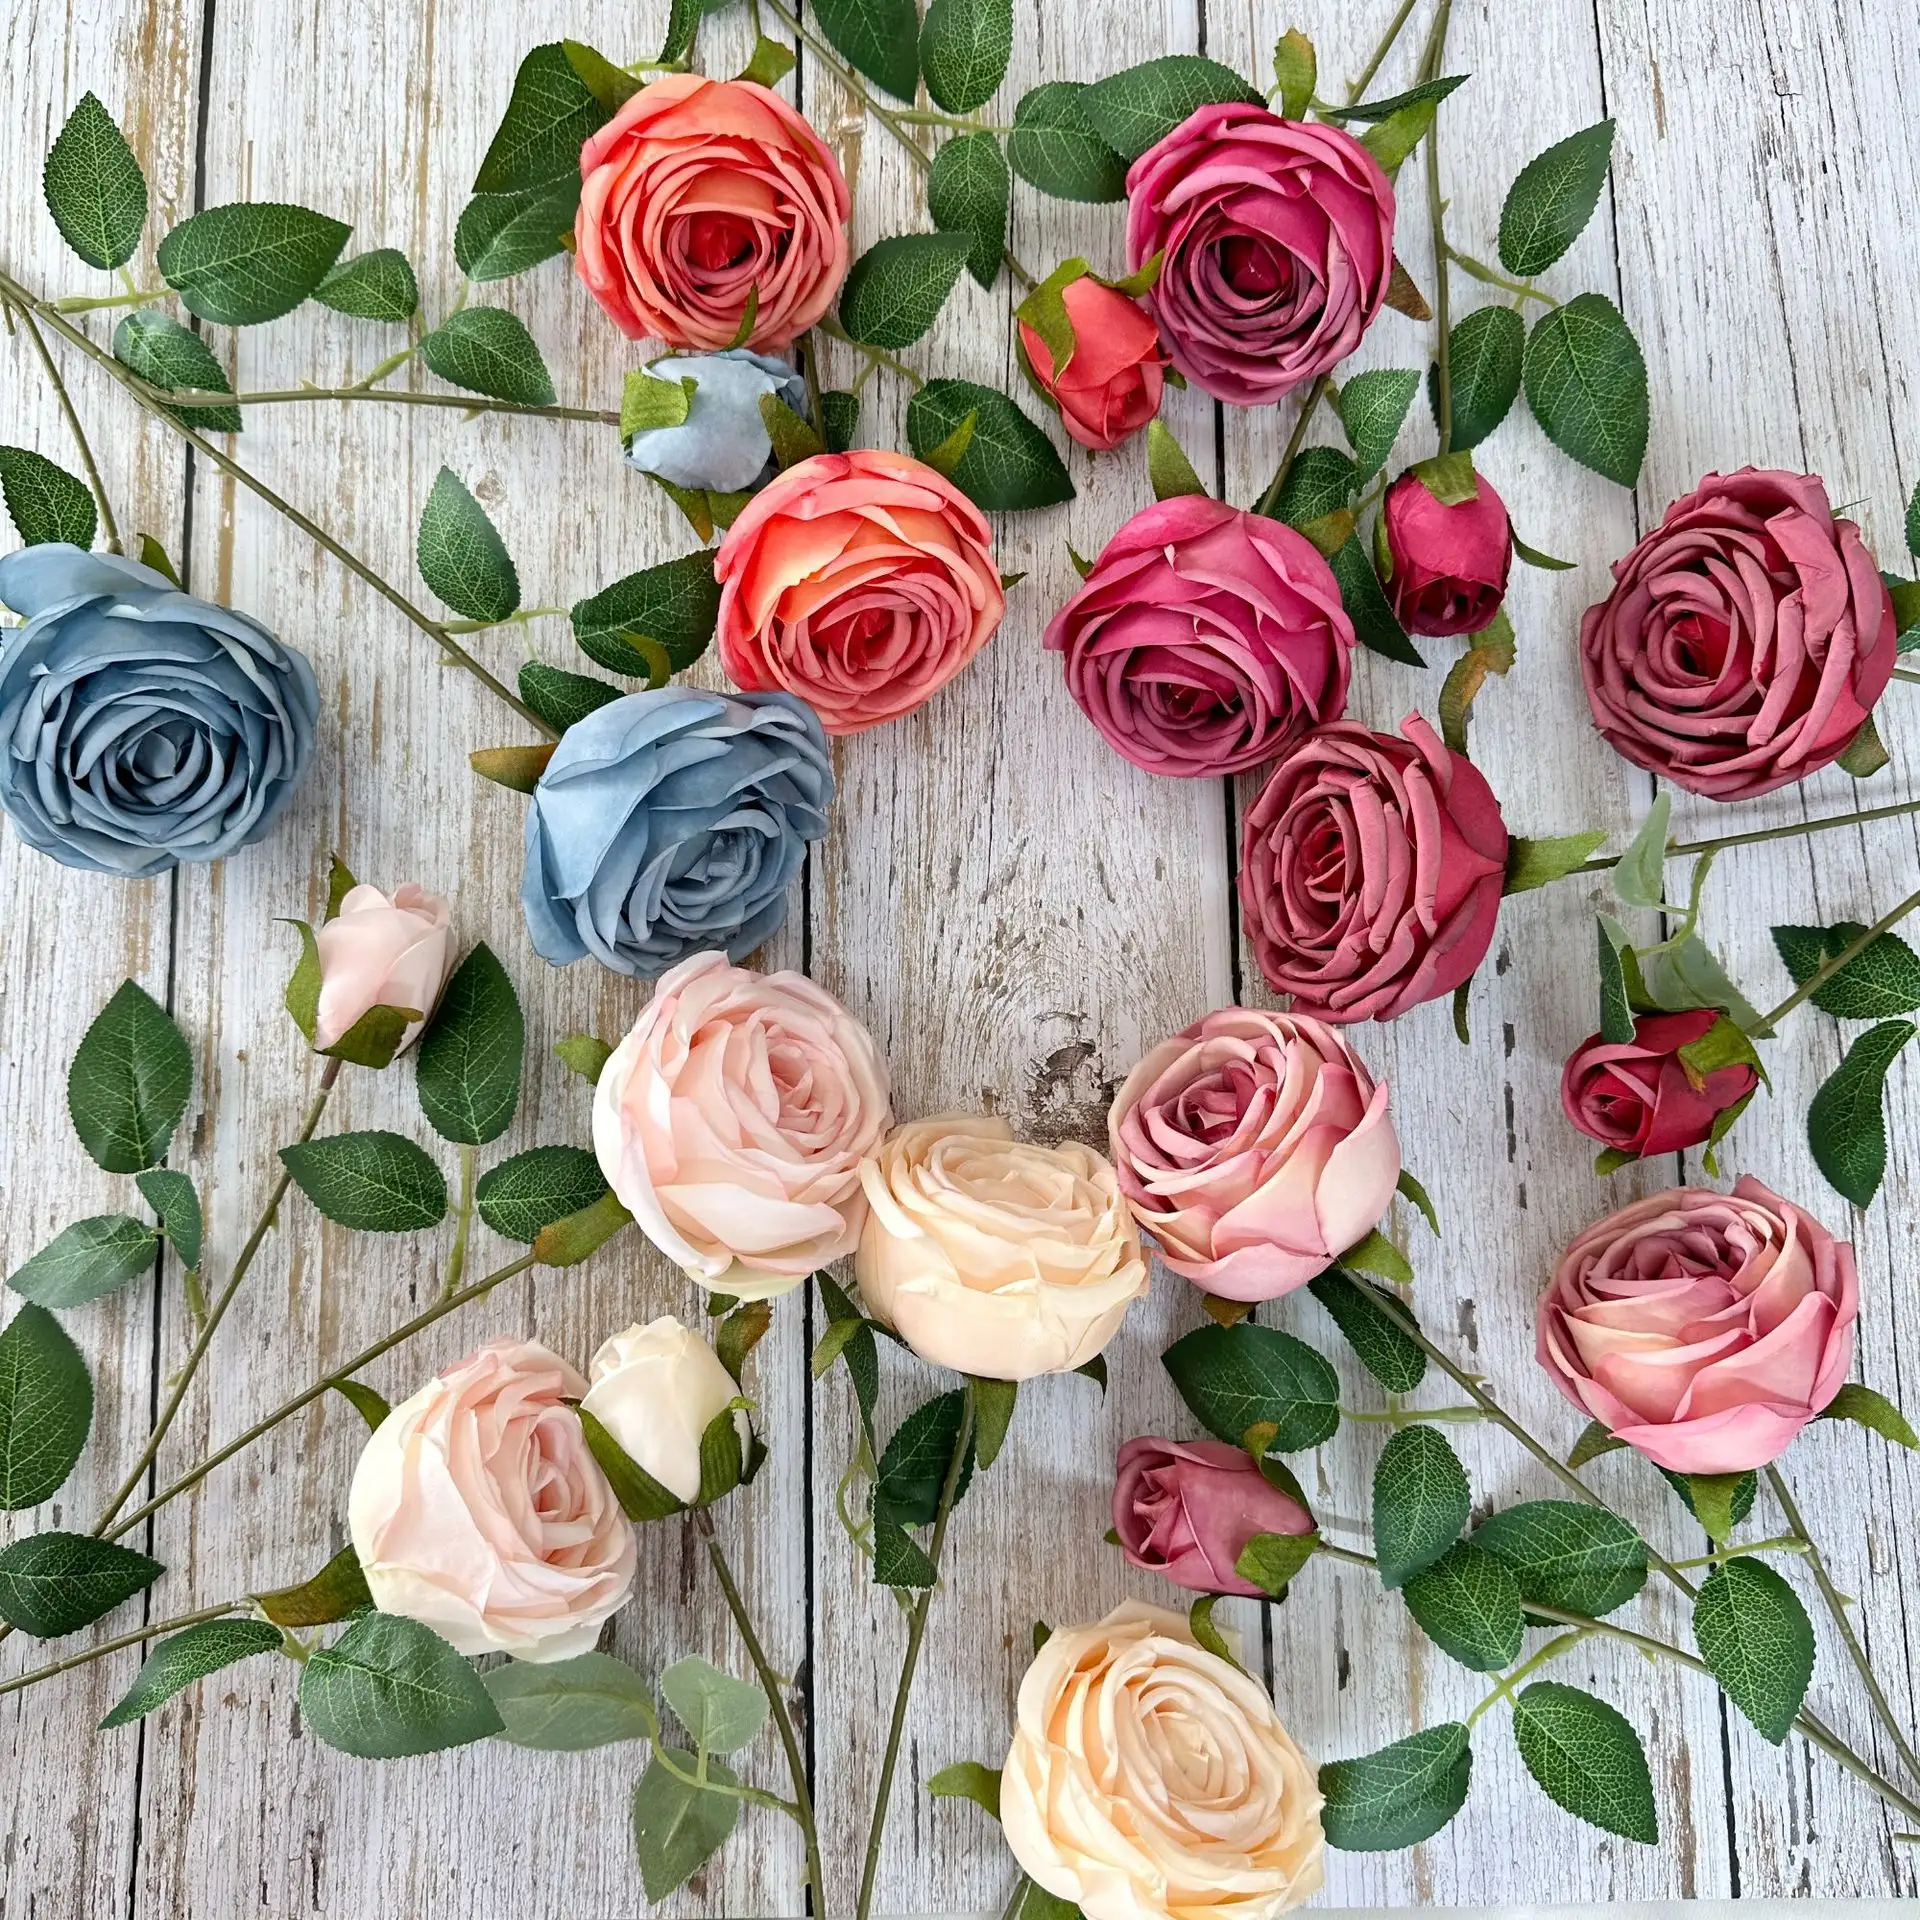 Venda por atacado de flores de seda de alta qualidade para decoração de casamento flores artificiais plantas